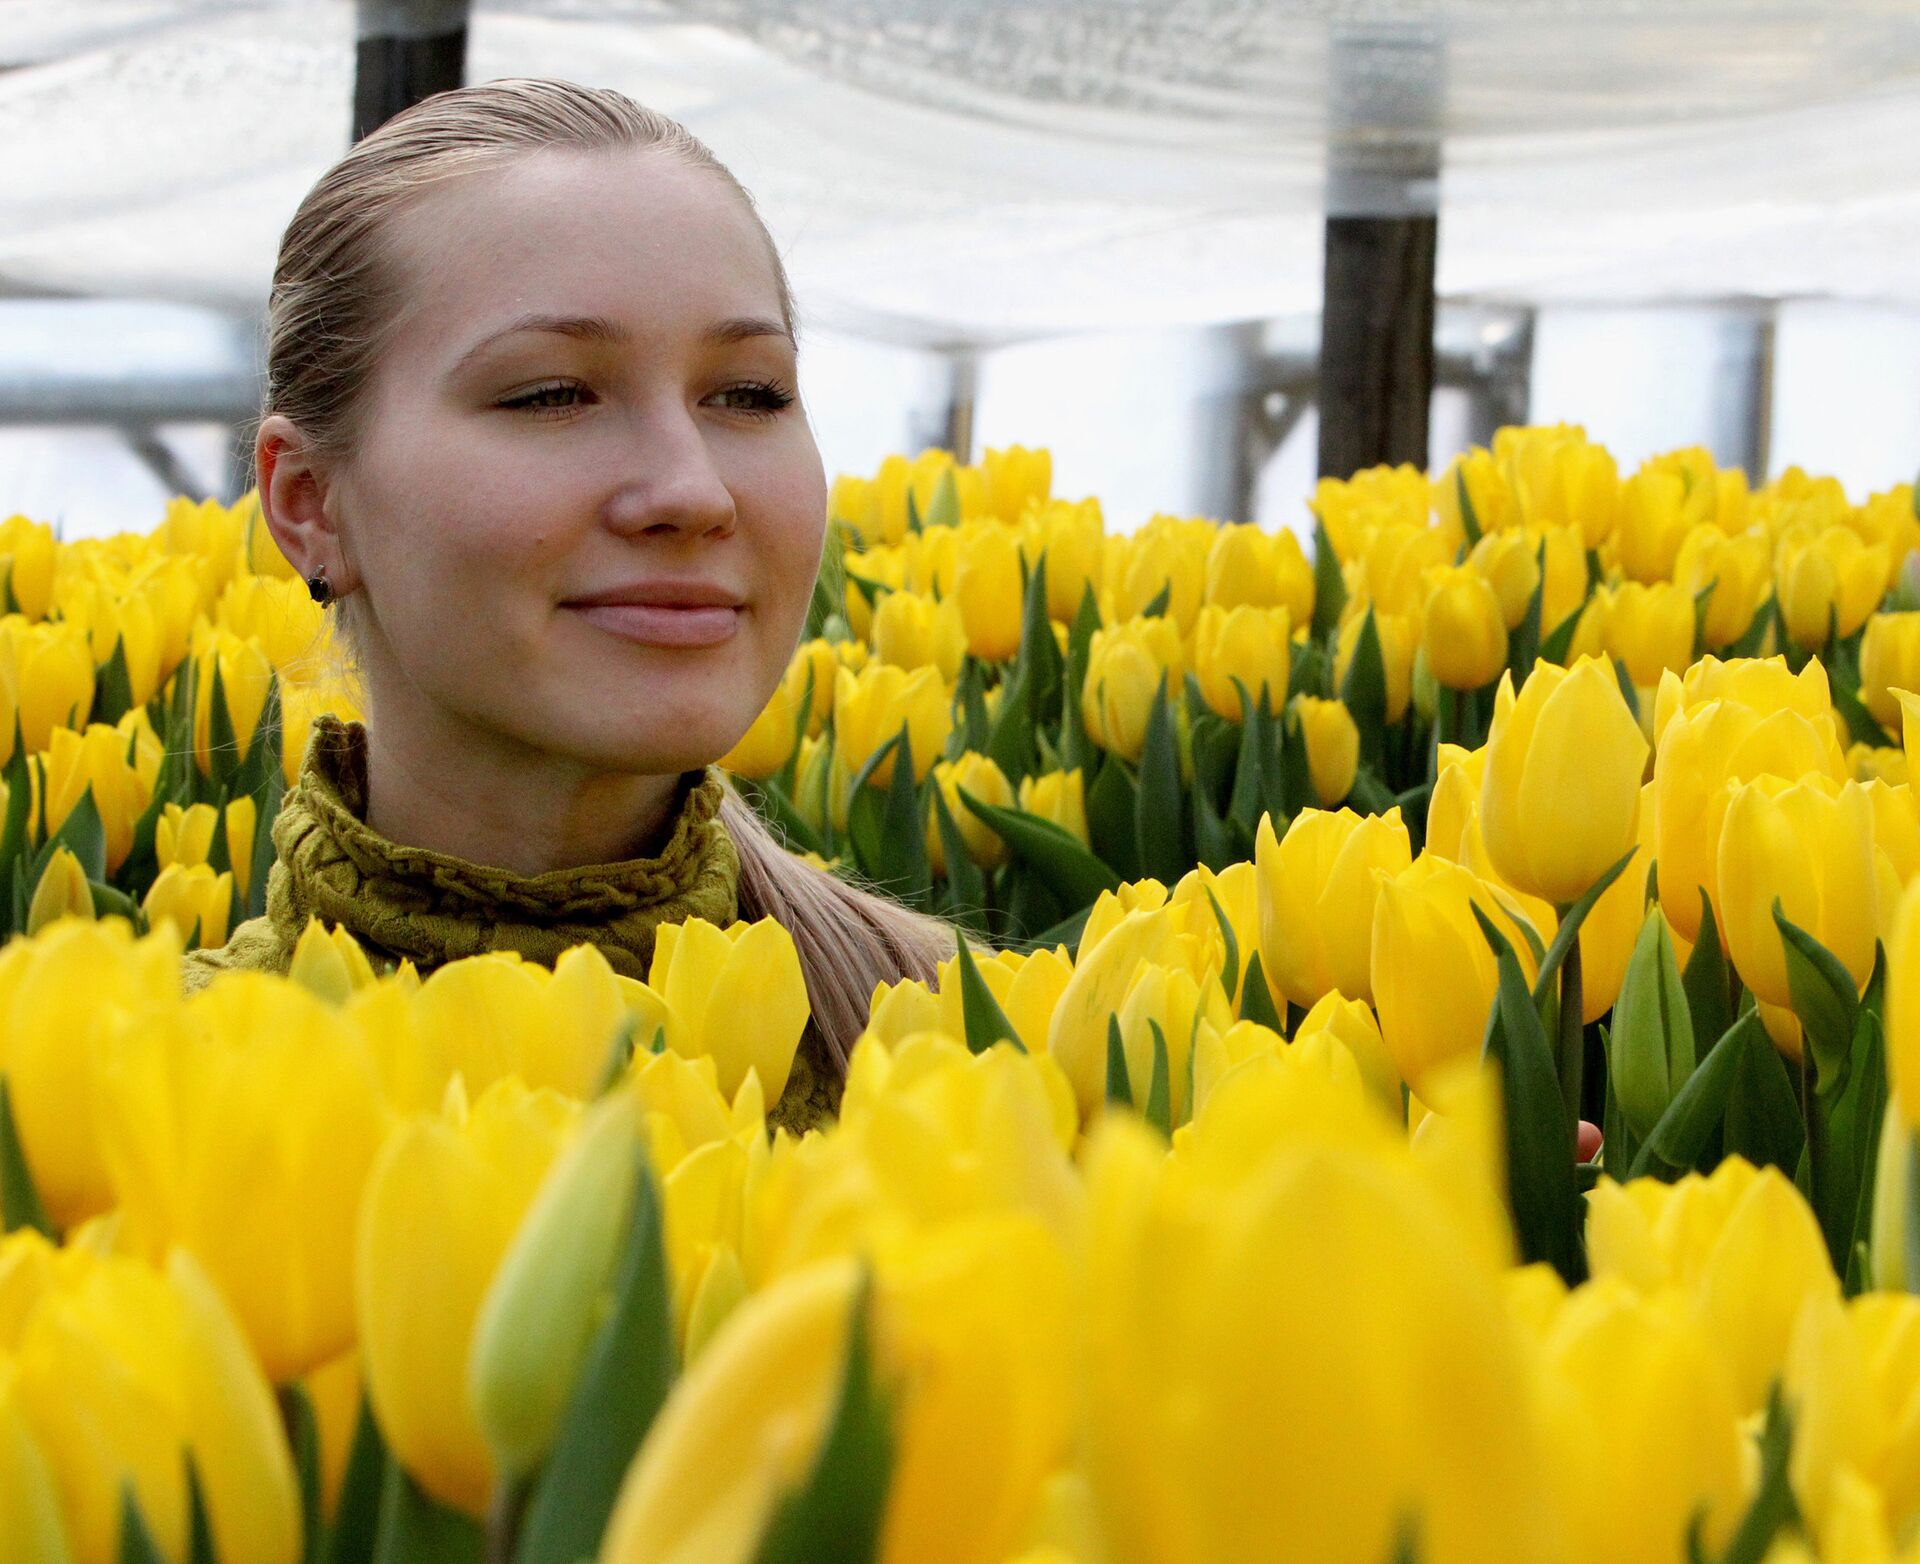 Фото с тюльпанами на улице. Женщина с тюльпанами. Девушка с желтыми тюльпанами. Фотосессия с тюльпанами.